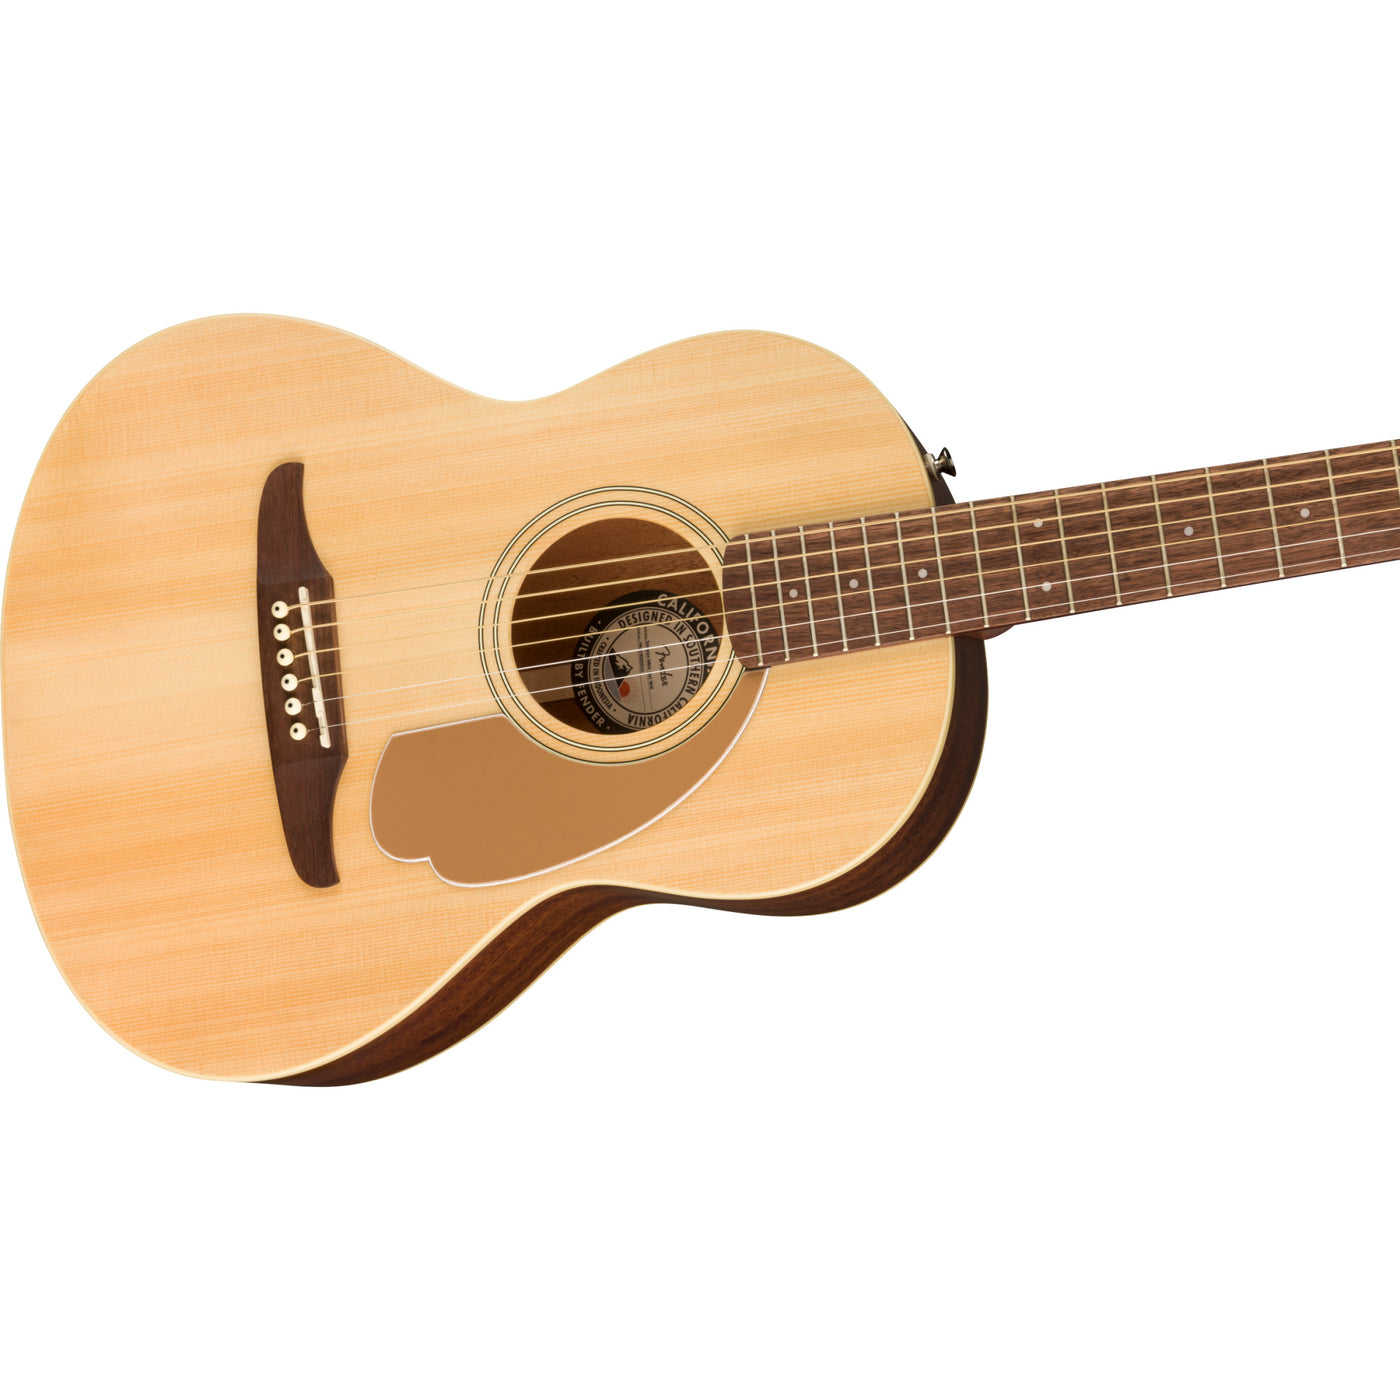 Sonoran Mini Acoustic Guitar with Bag, Natural (0970770121)